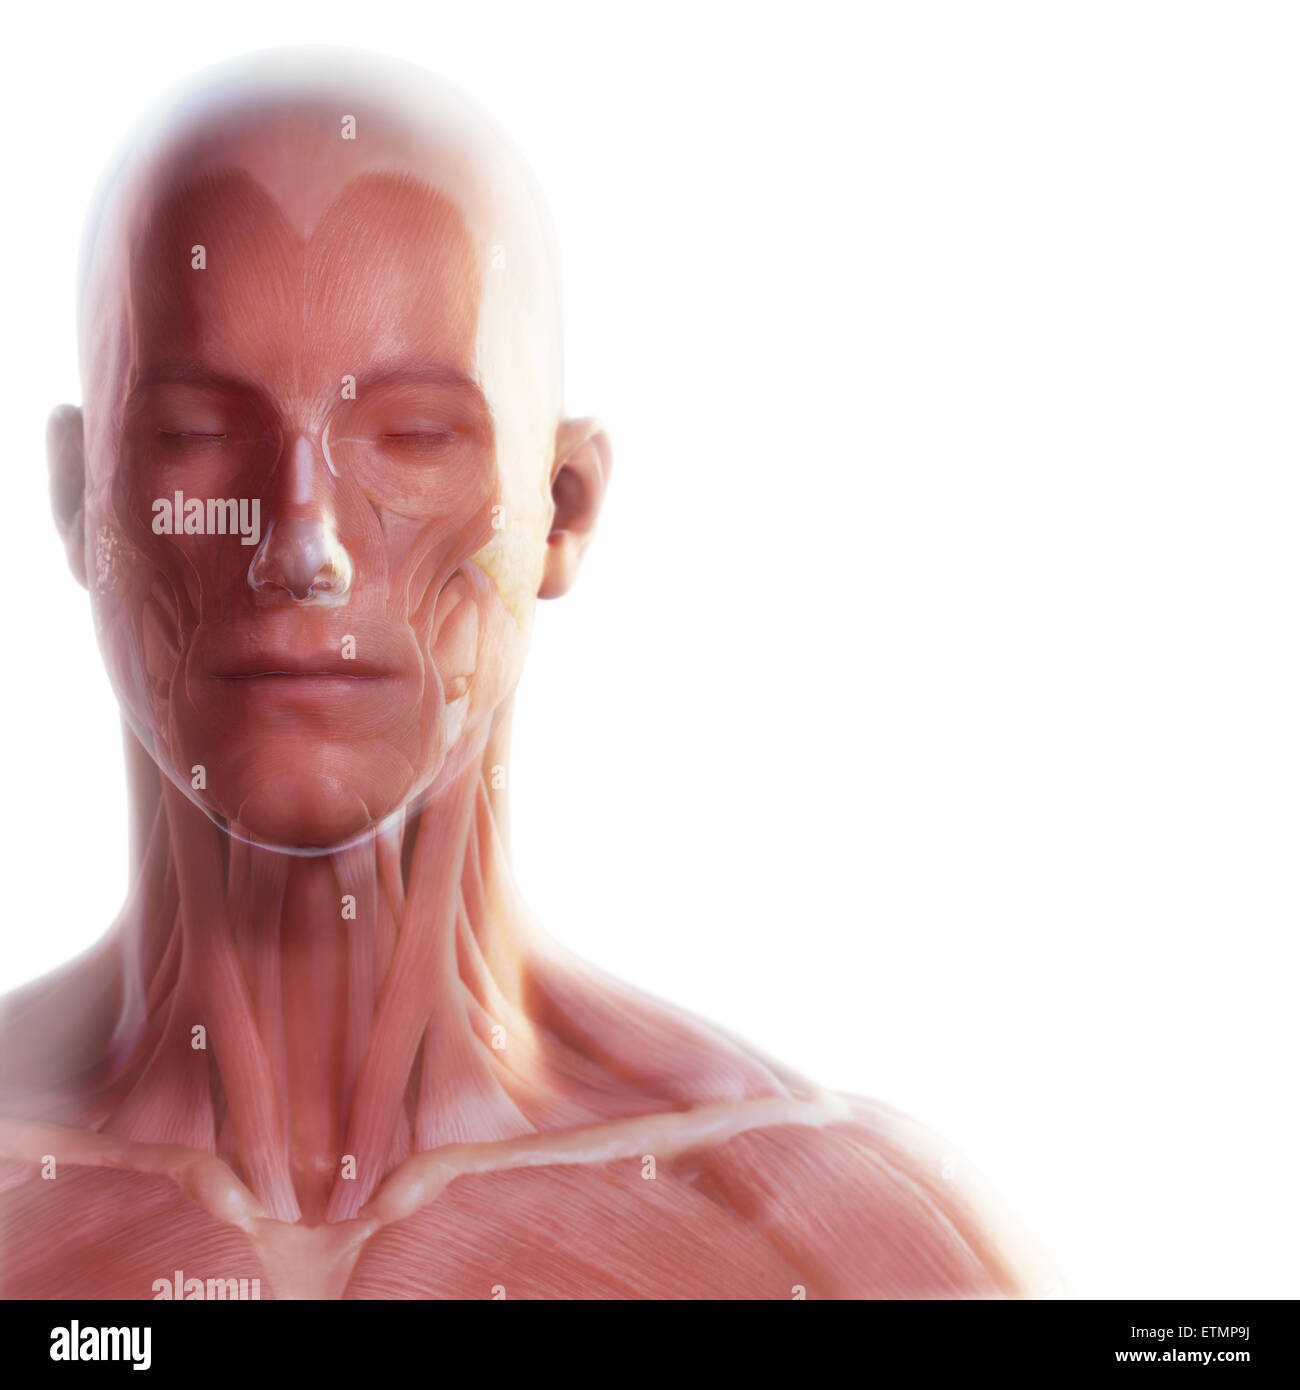 Imagen conceptual de la cara con la musculatura visible bajo la piel. Foto de stock